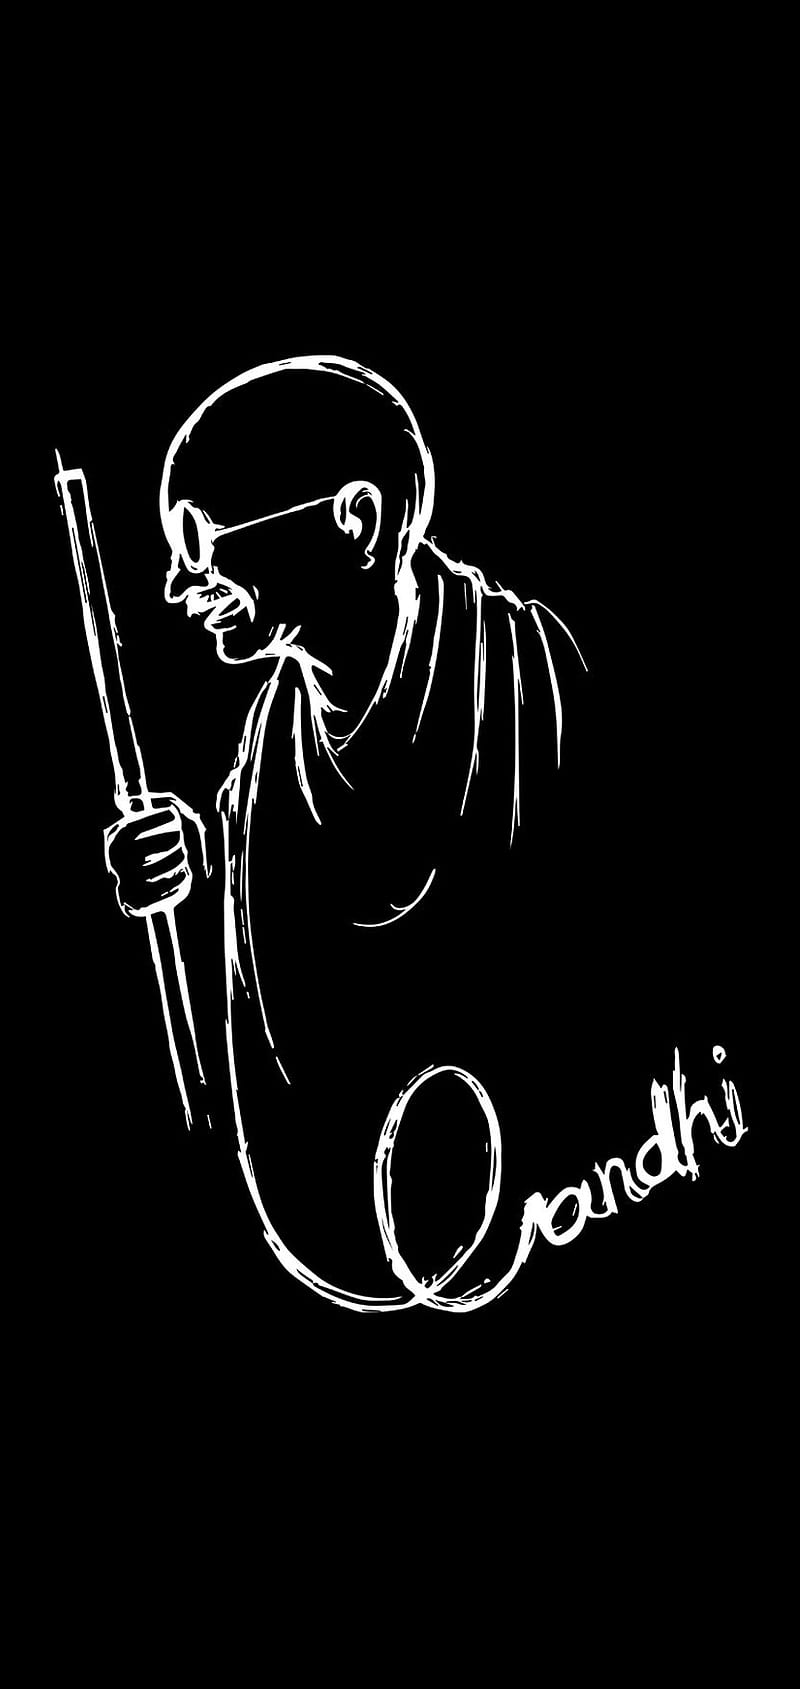 Gandhi bapu, bapu, gandhi, gandhiji, HD phone wallpaper